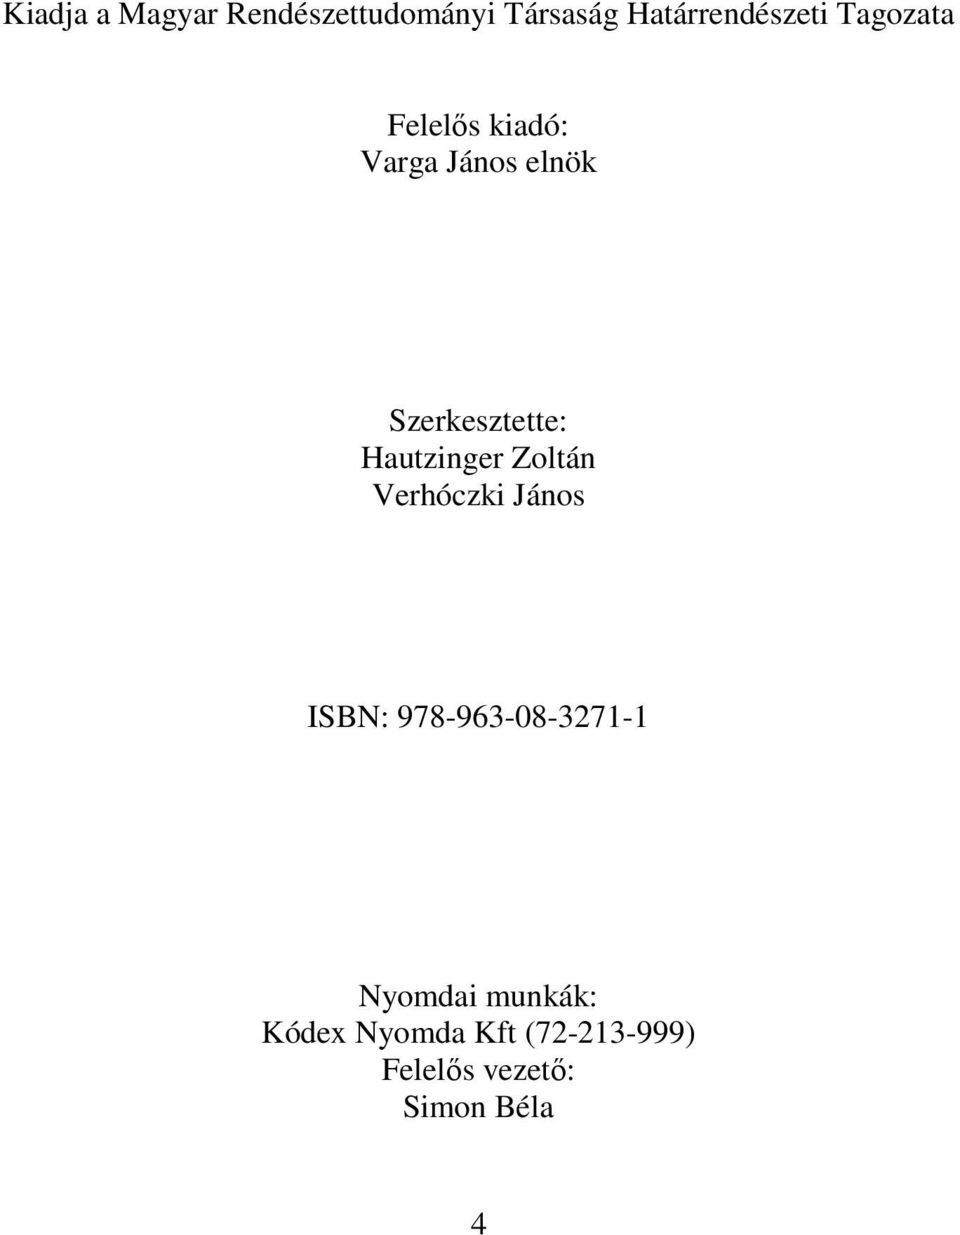 Hautzinger Zoltán Verhóczki János ISBN: 978-963-08-3271-1